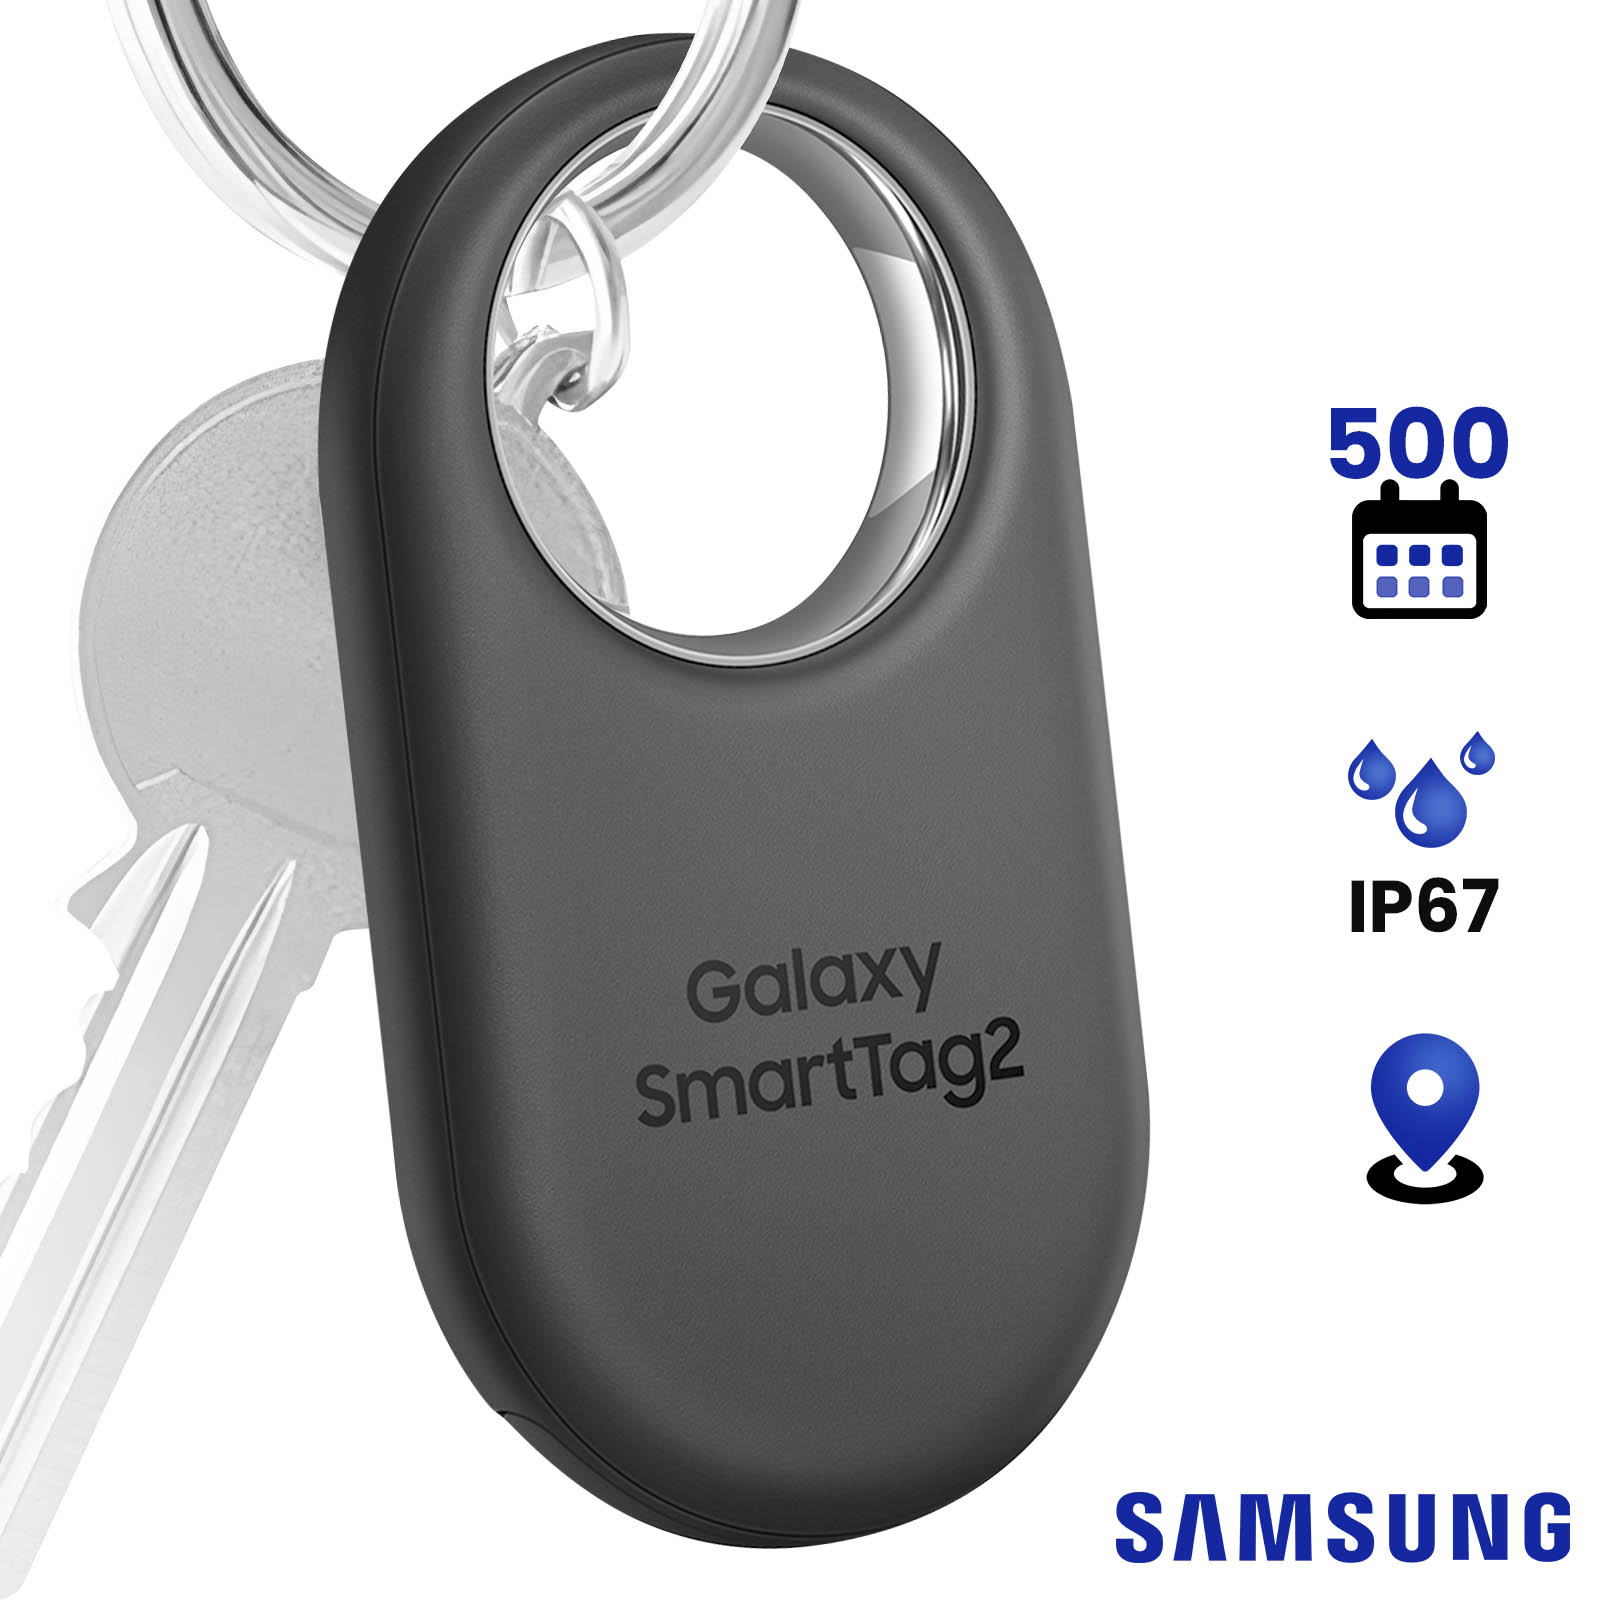 Samsung Galaxy SmartTag 2 : les spécifications et le nouveau